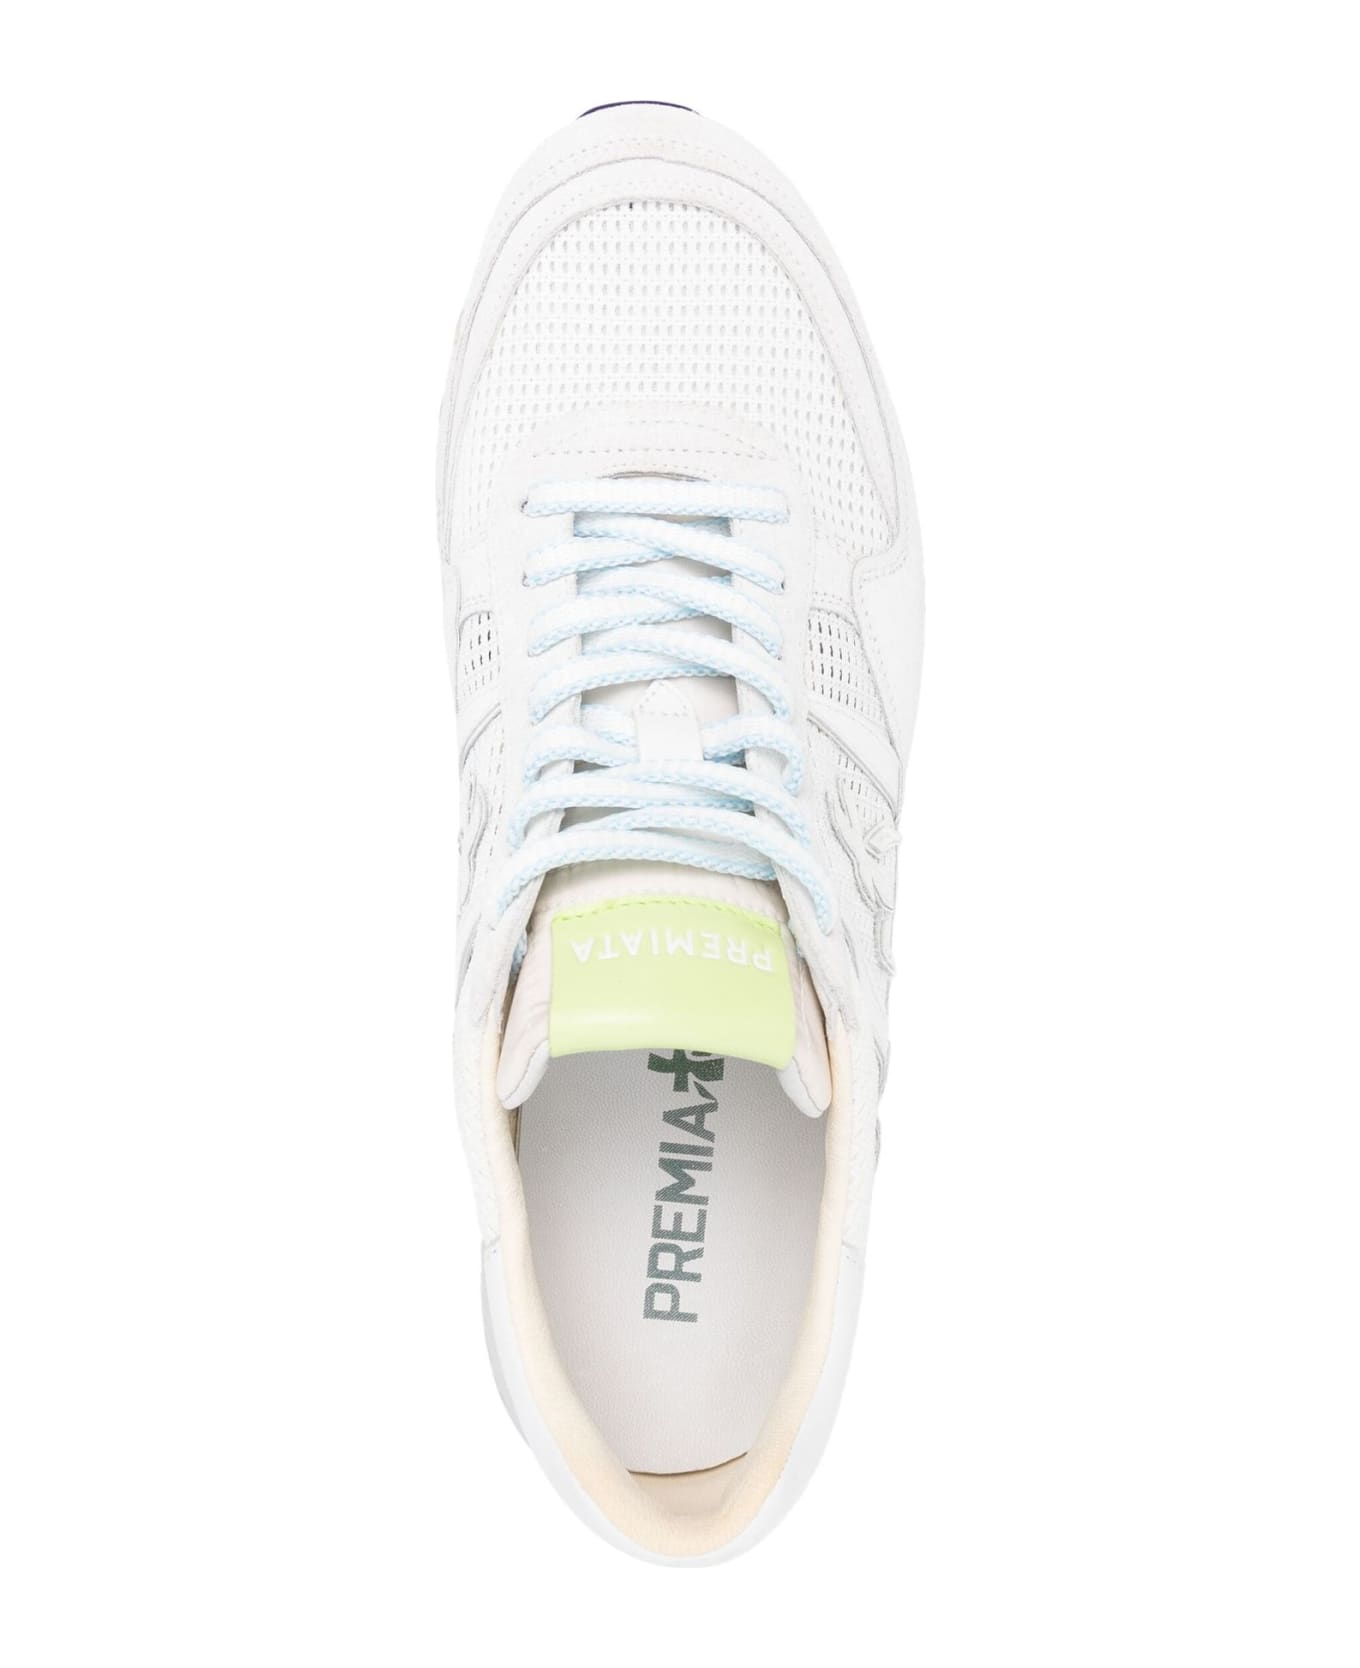 Premiata Landeck Light Grey Sneakers - White